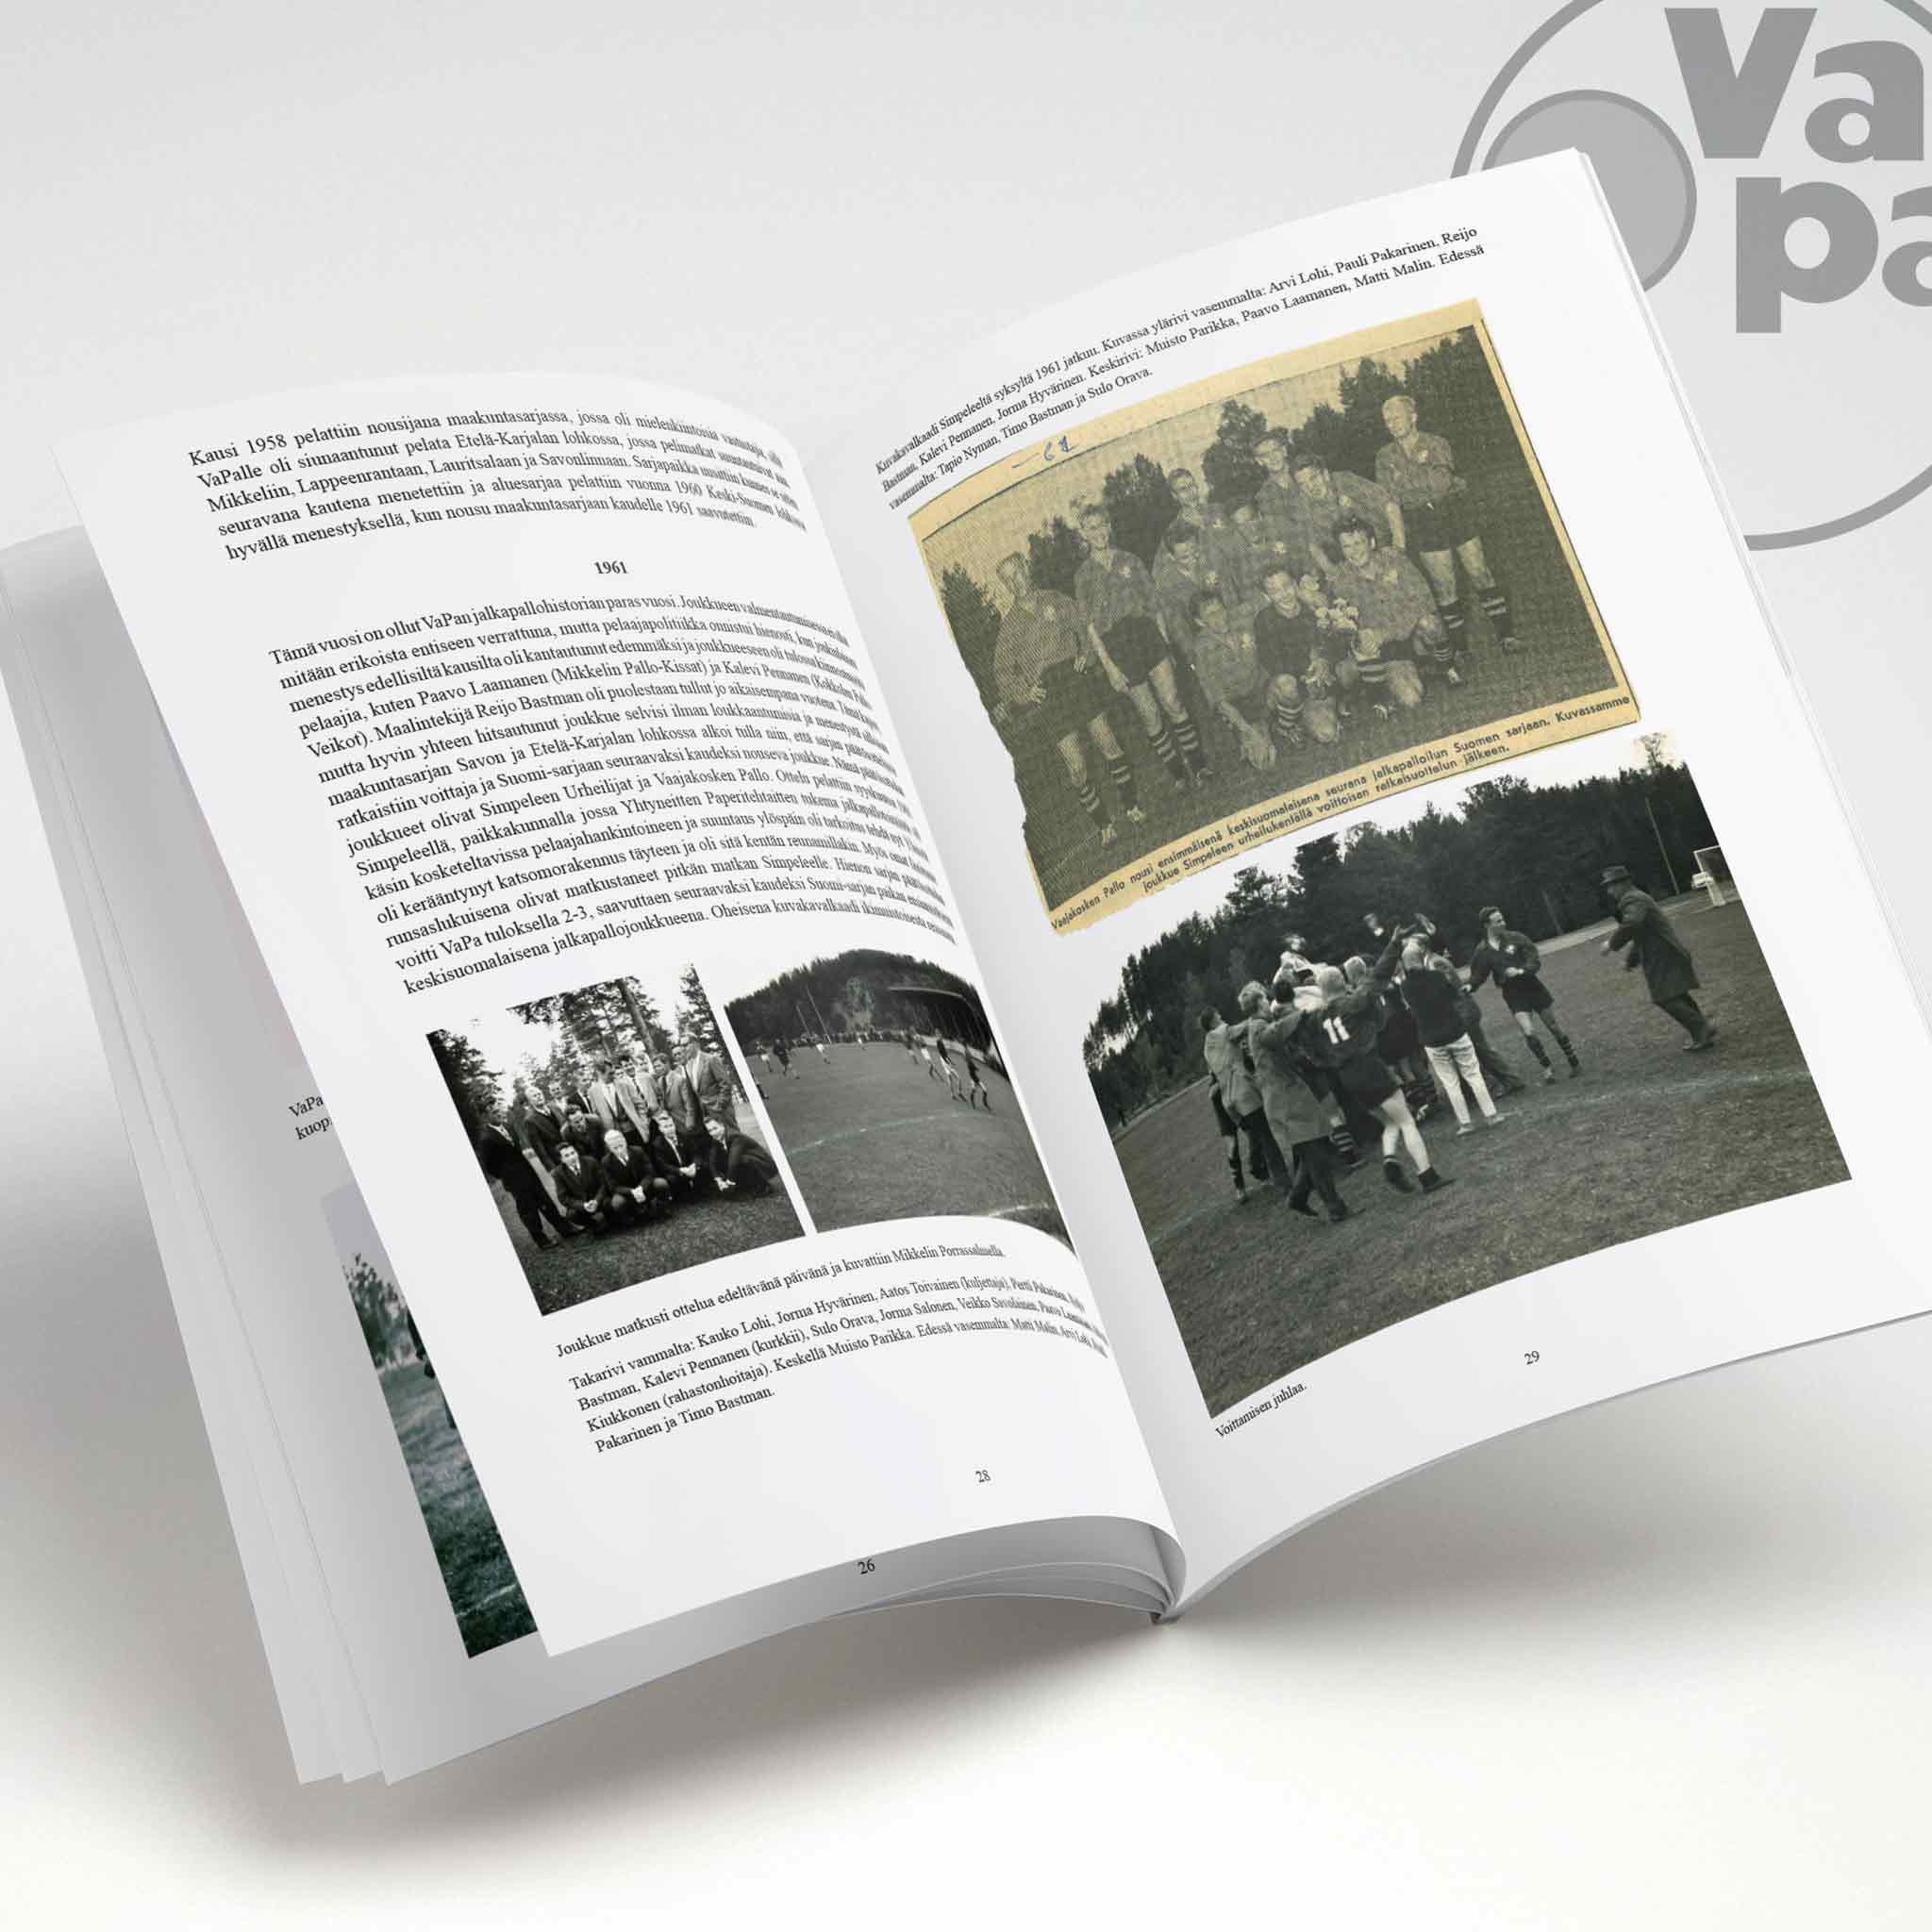 VaPa-historiikki: Vaajakosken Pallo - Pirteä palloseura